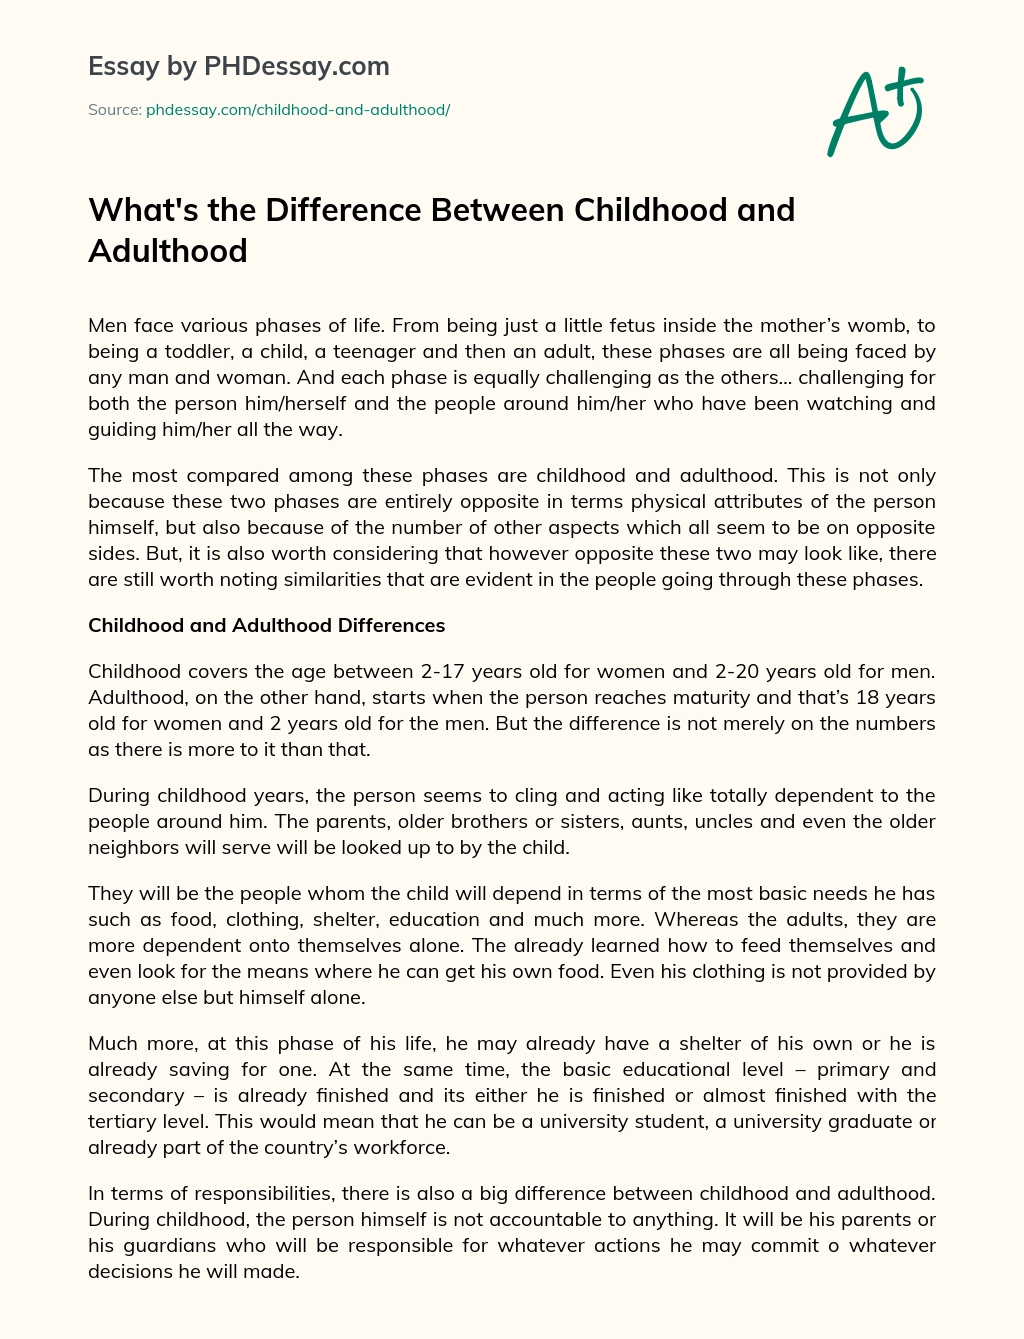 jaký je rozdíl mezi esejem o dětství a dospělosti